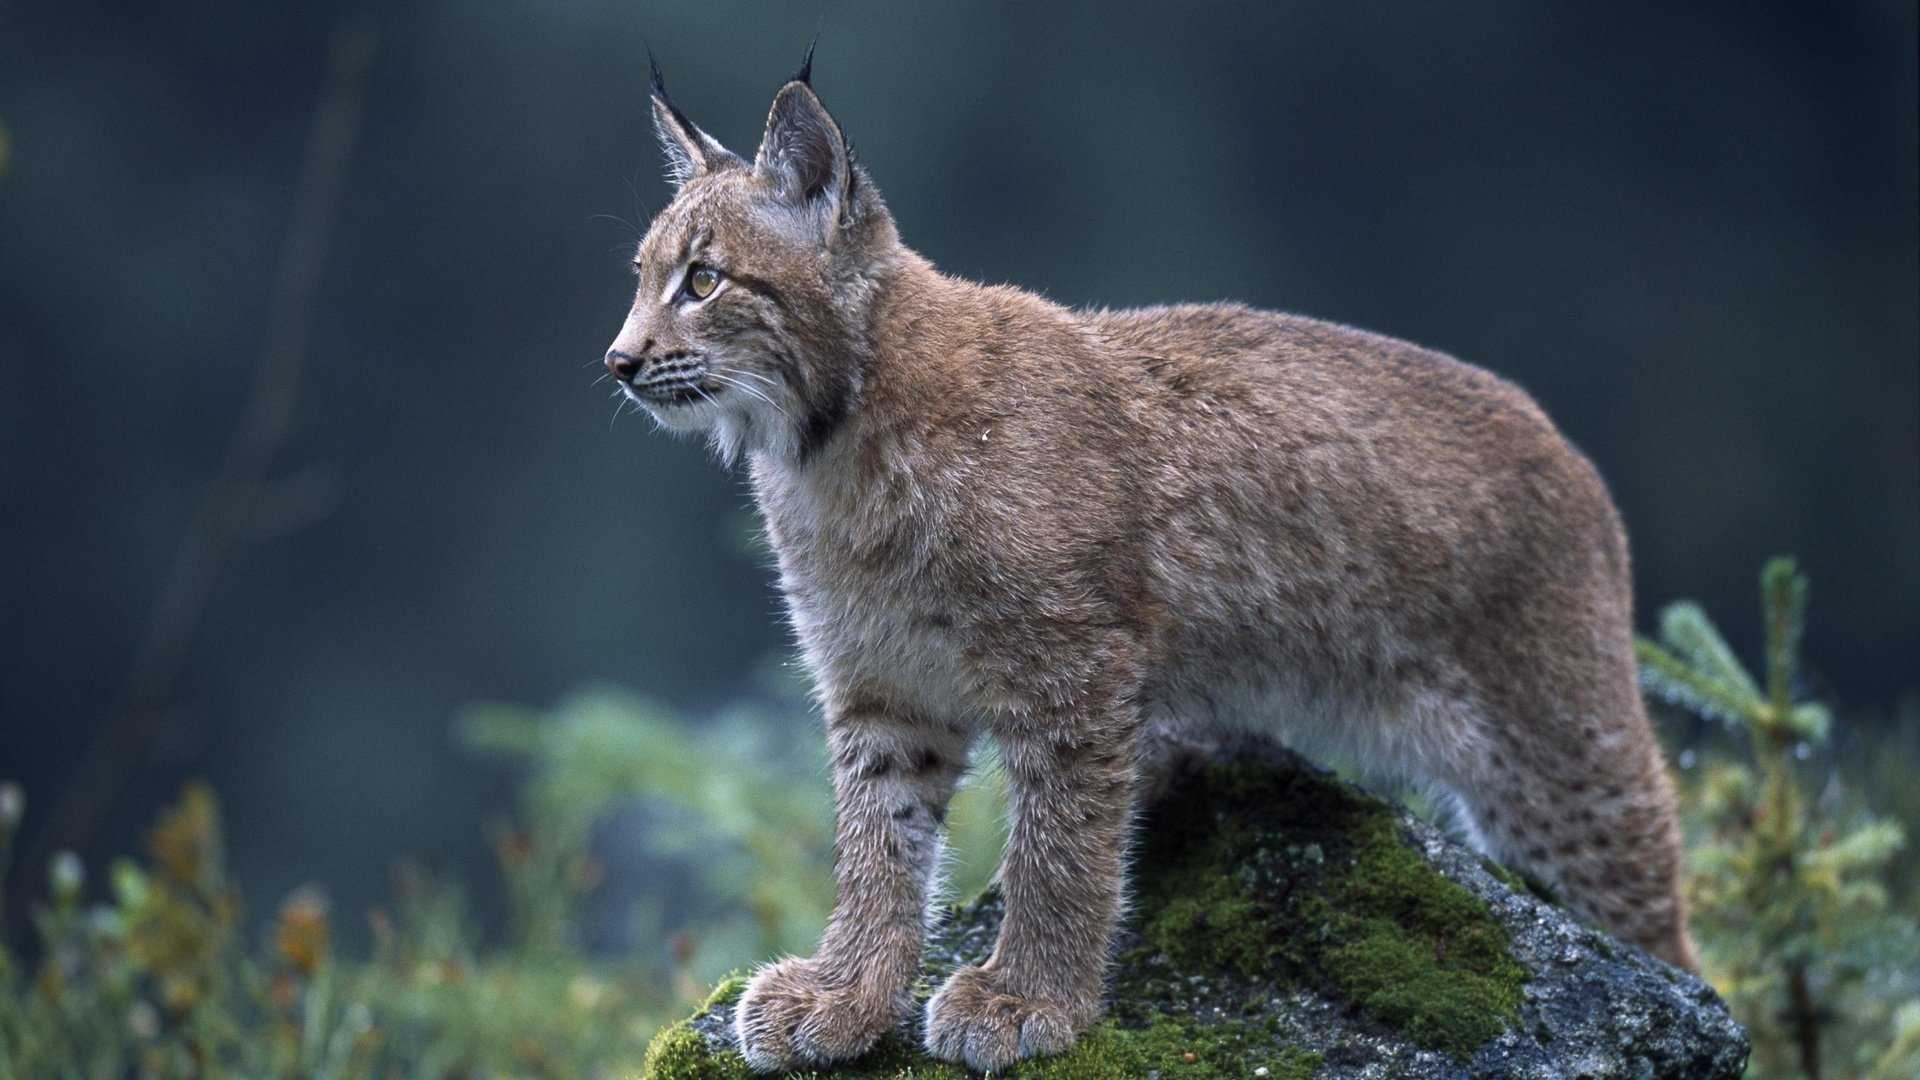 Рыжая рысь или красная рысь Lynx rufus - вид хищного млекопитающего из семейства кошачьи, родиной которого является Северная Америка